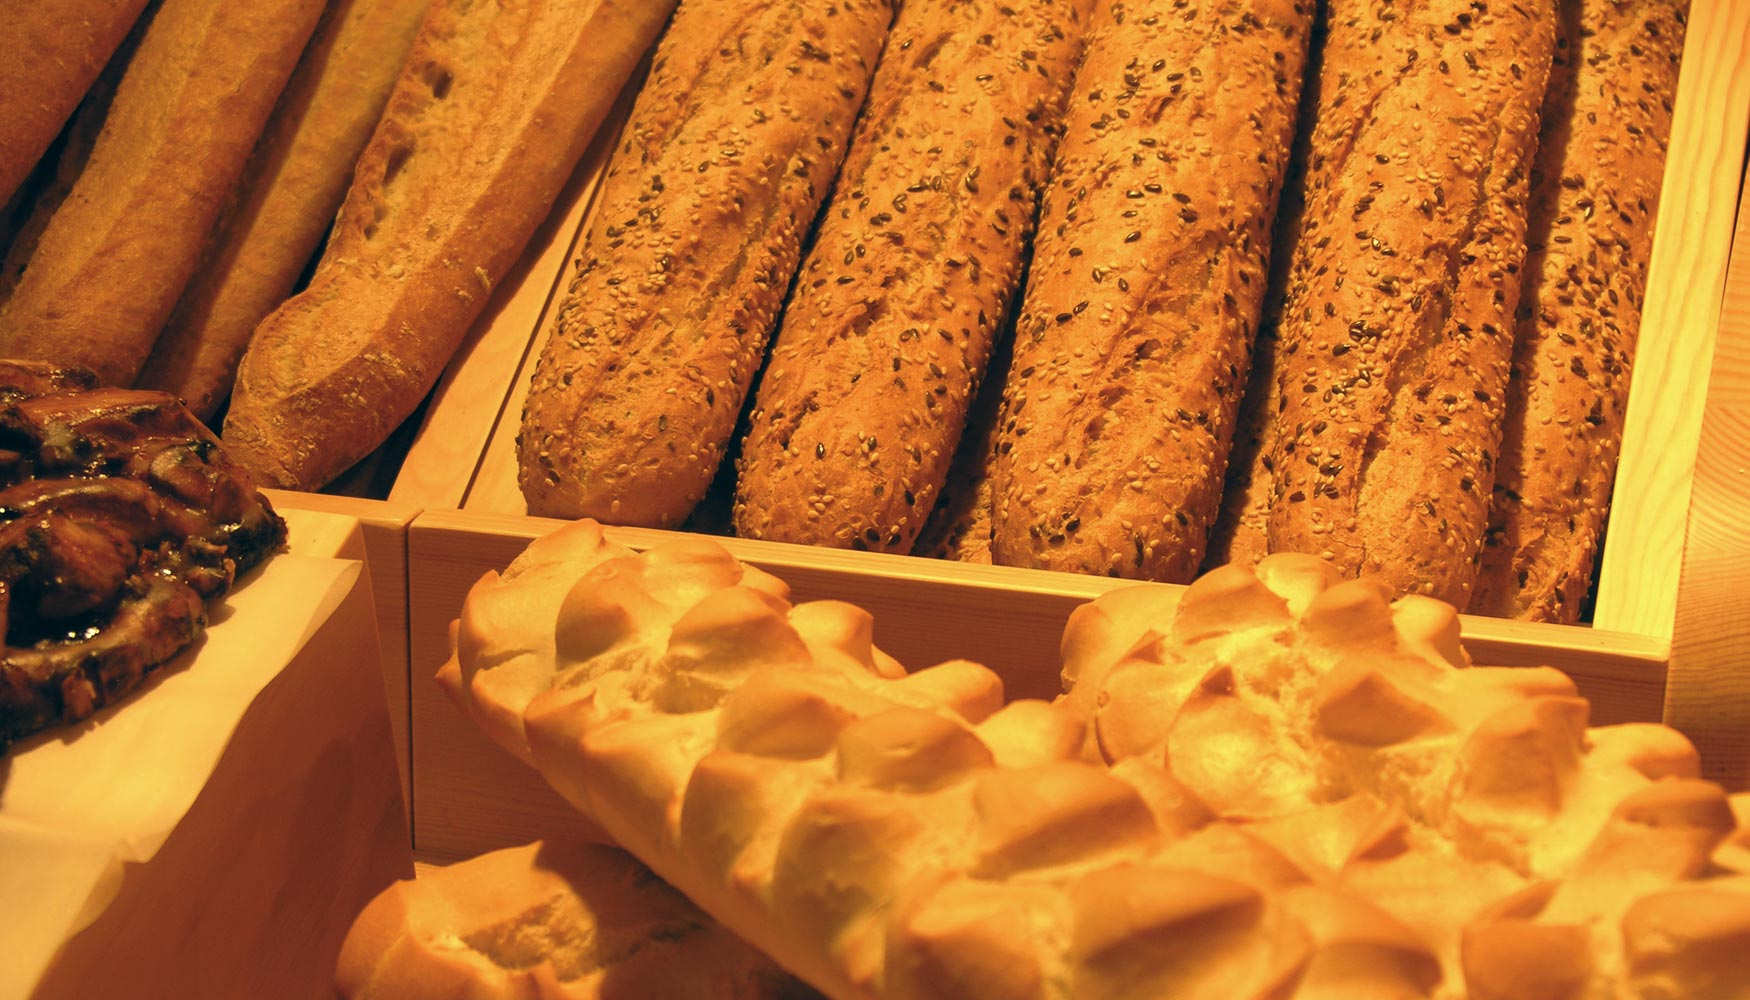 Algunas de las variedades ms demandadas durante el periodo estival por los visitantes extranjeros son el pan integral, pan francs, pan de centeno...